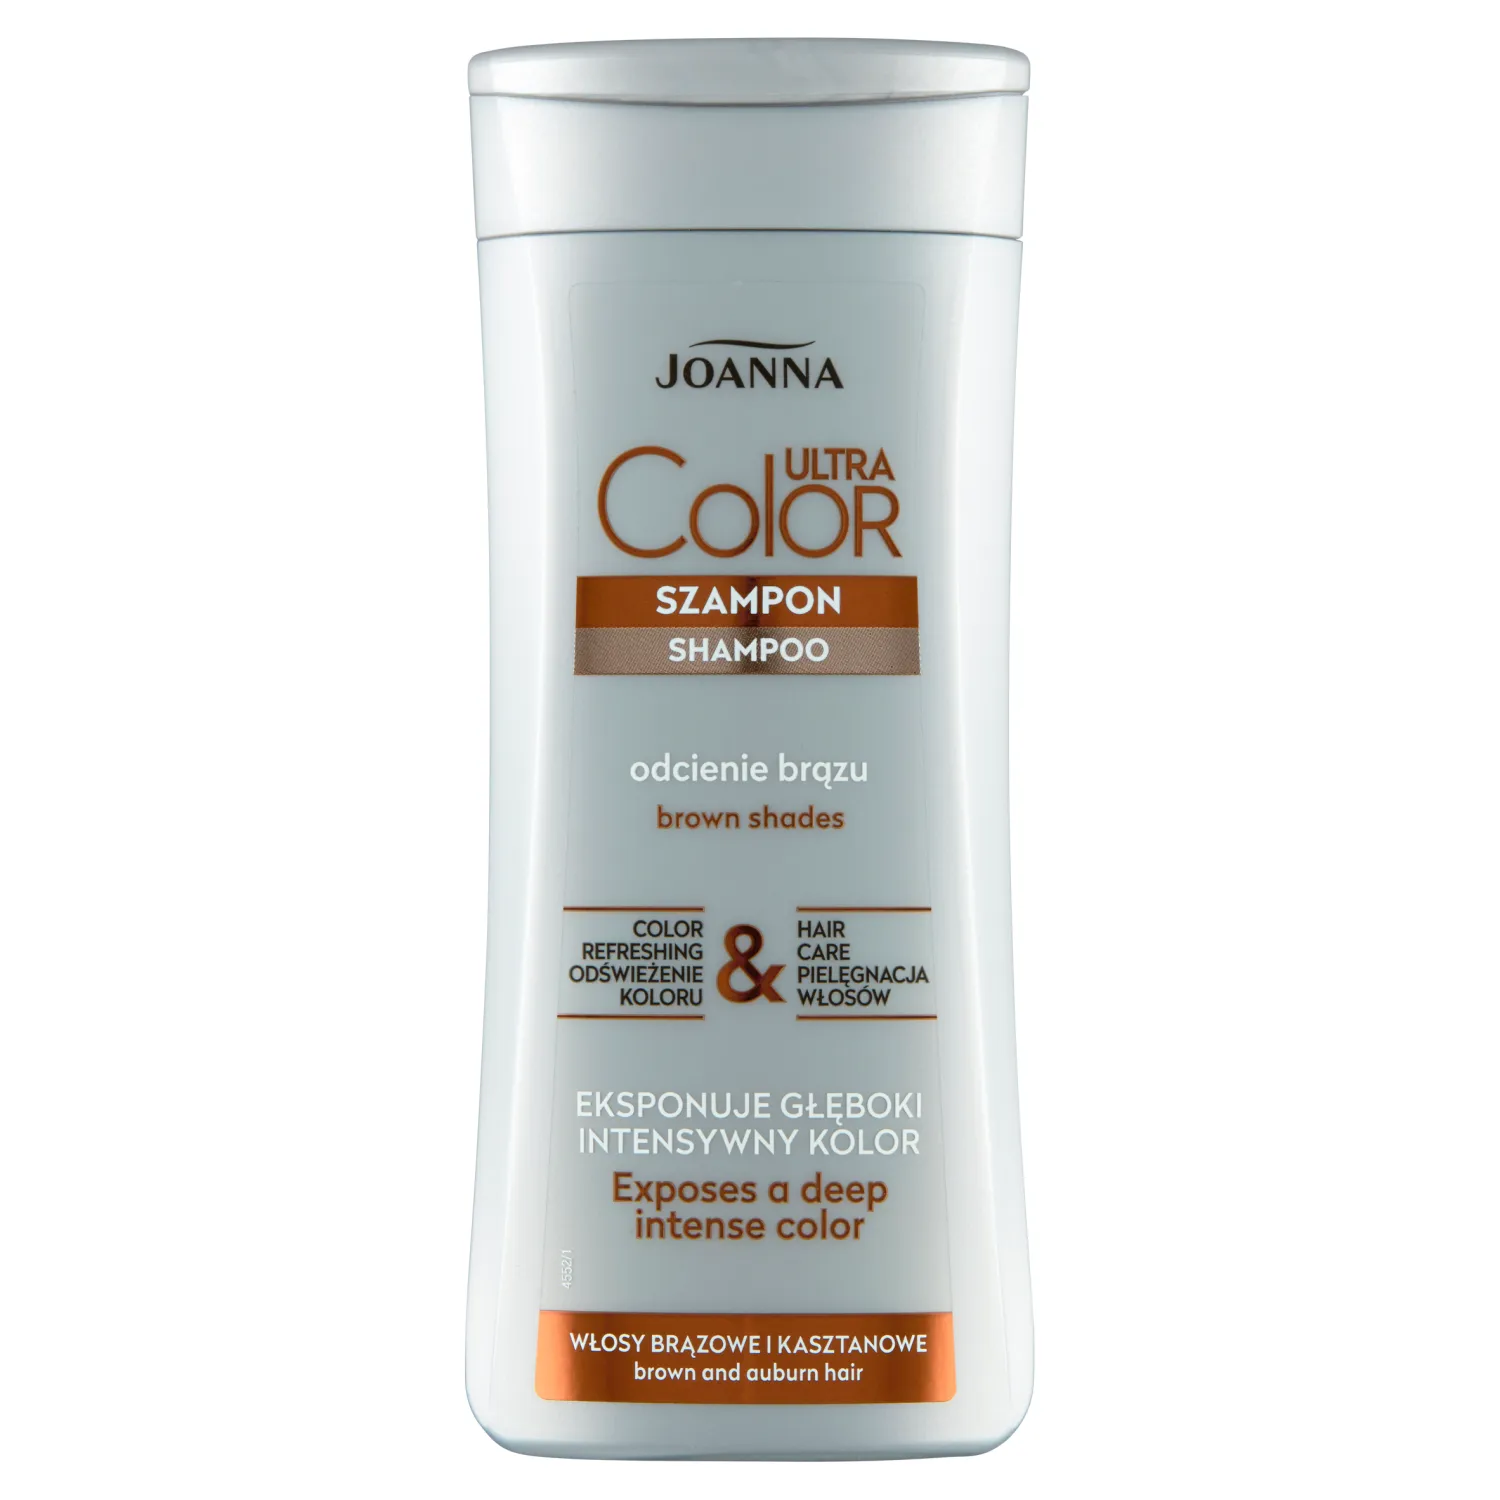 Joanna Ultra Color szampon do włosów brązowych i kasztanowych, 200 ml